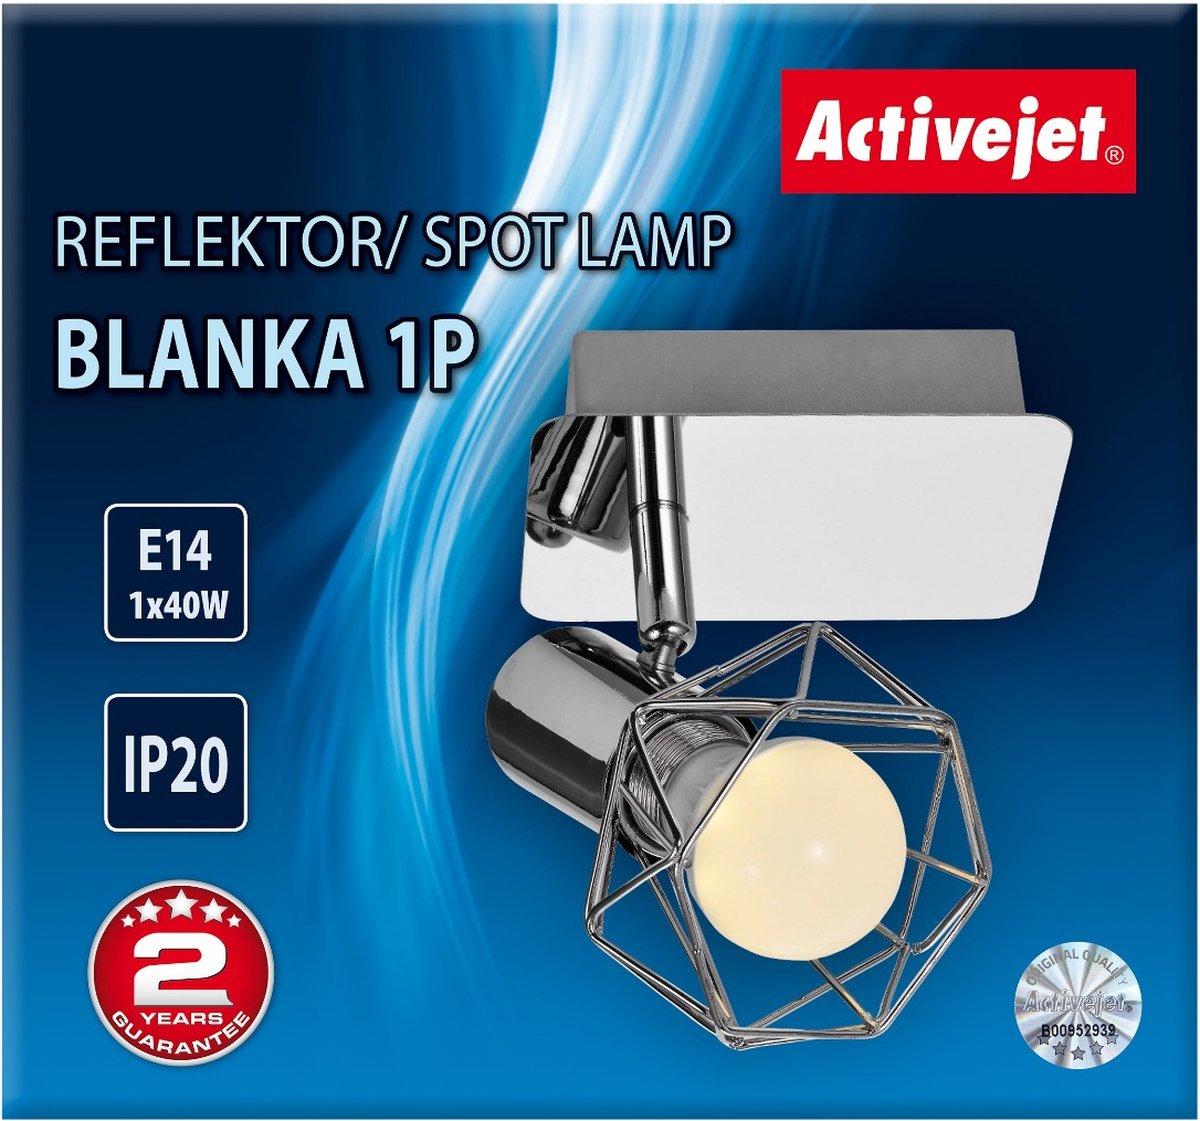 ActiveJet Aje-Blanka 1P Spotlamp.